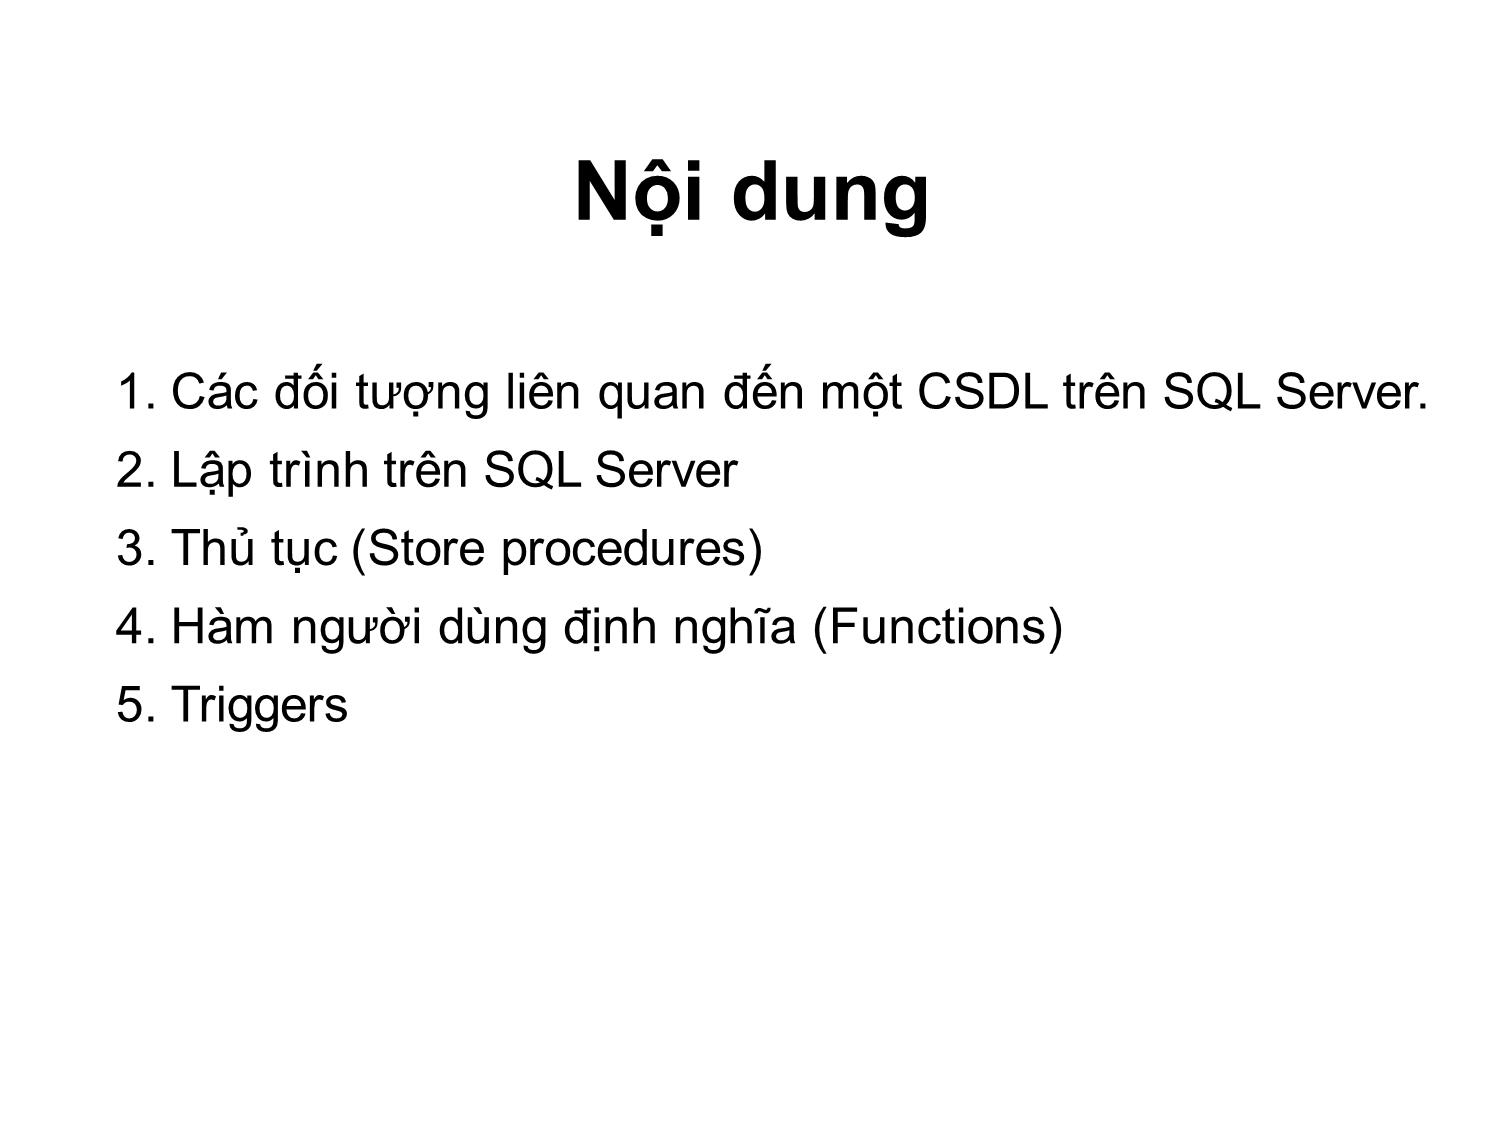 Lập trình SQL Server trang 2